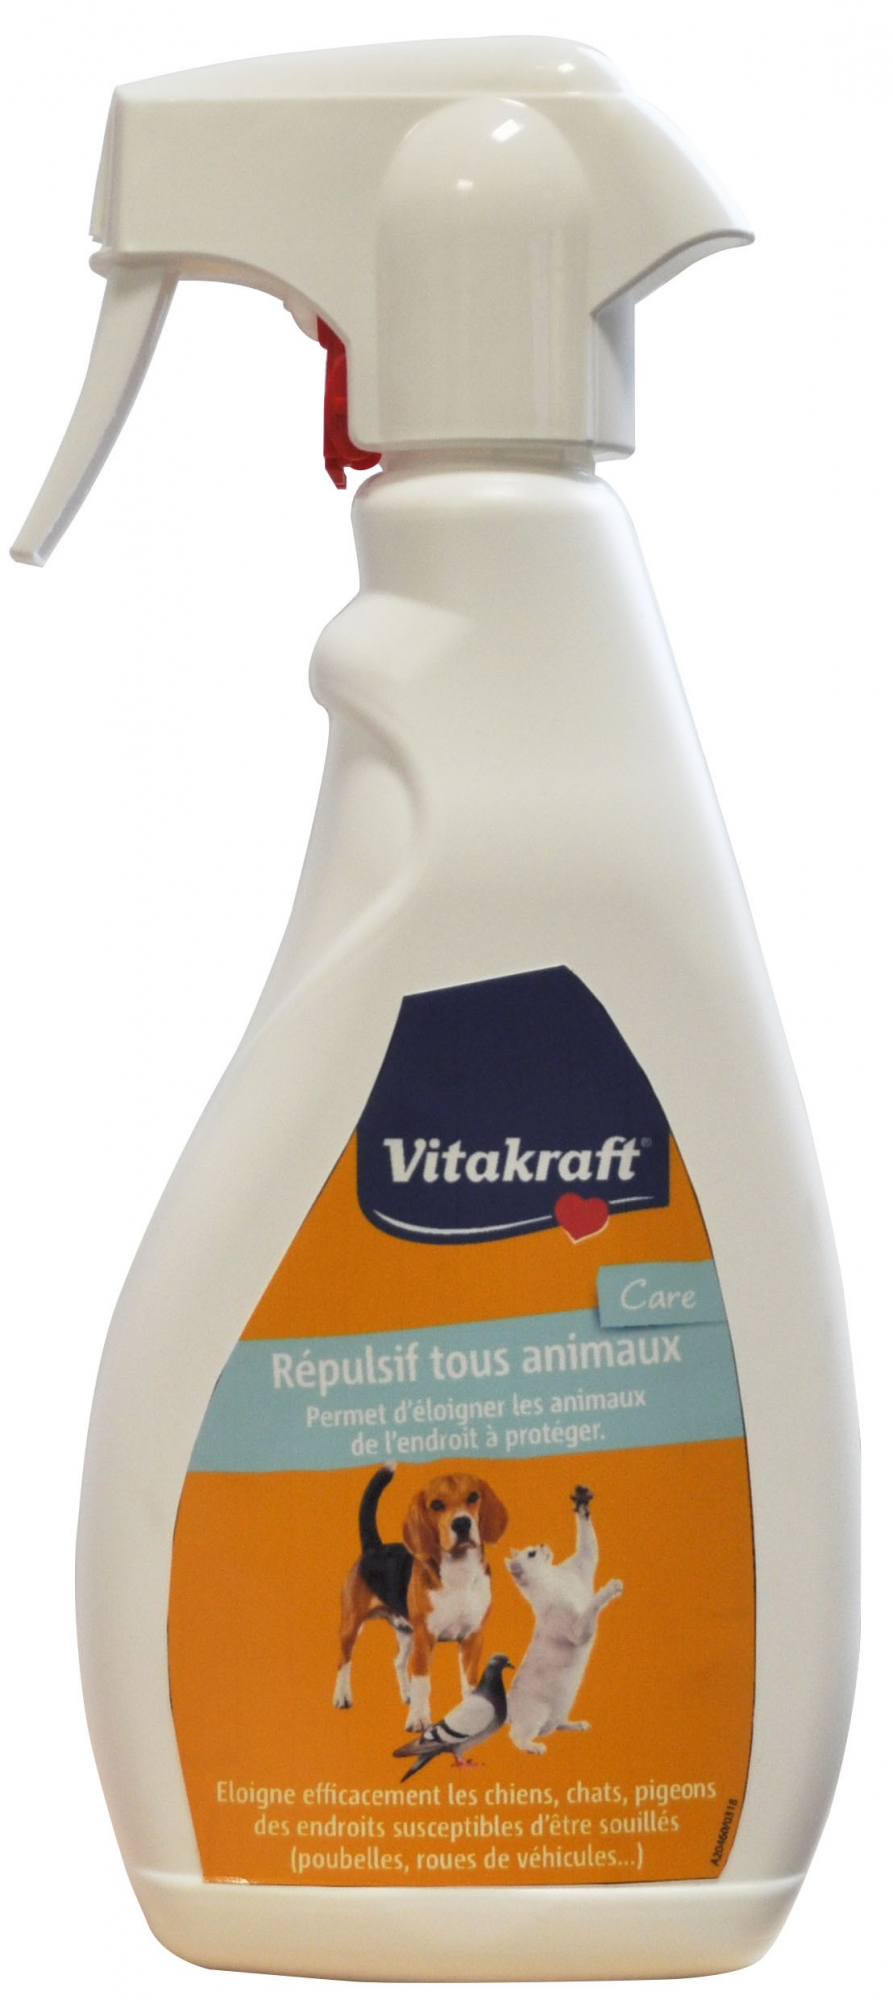 Spray repelente para todos los animales